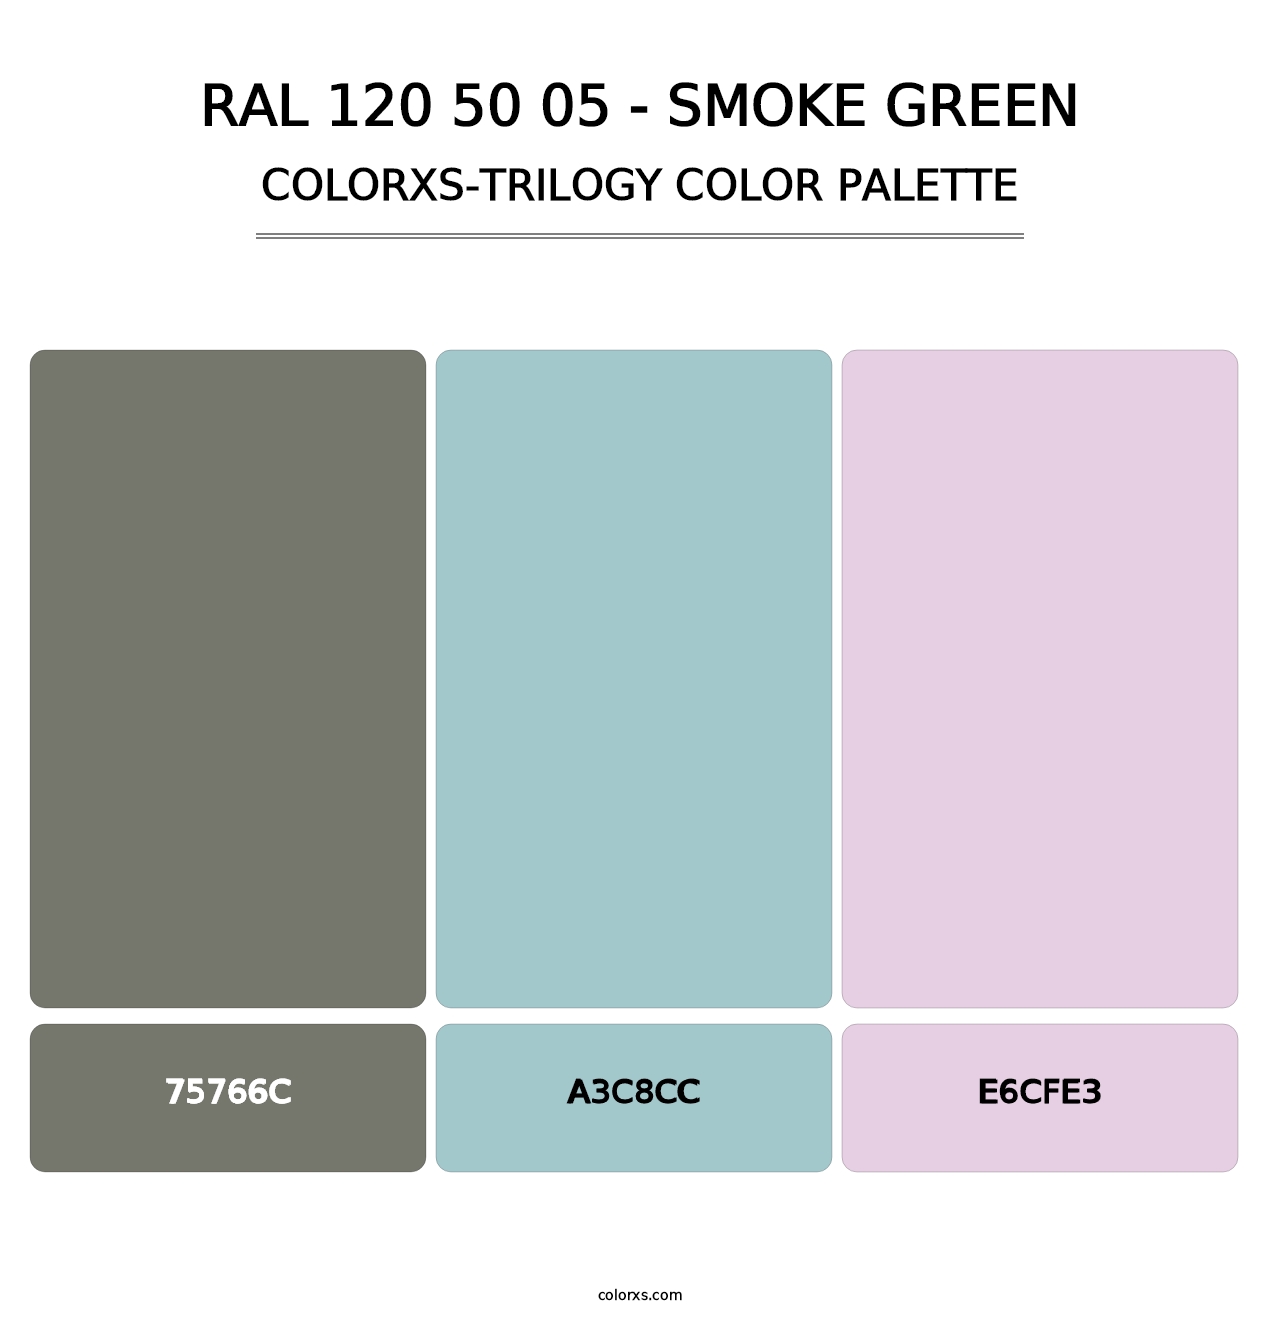 RAL 120 50 05 - Smoke Green - Colorxs Trilogy Palette